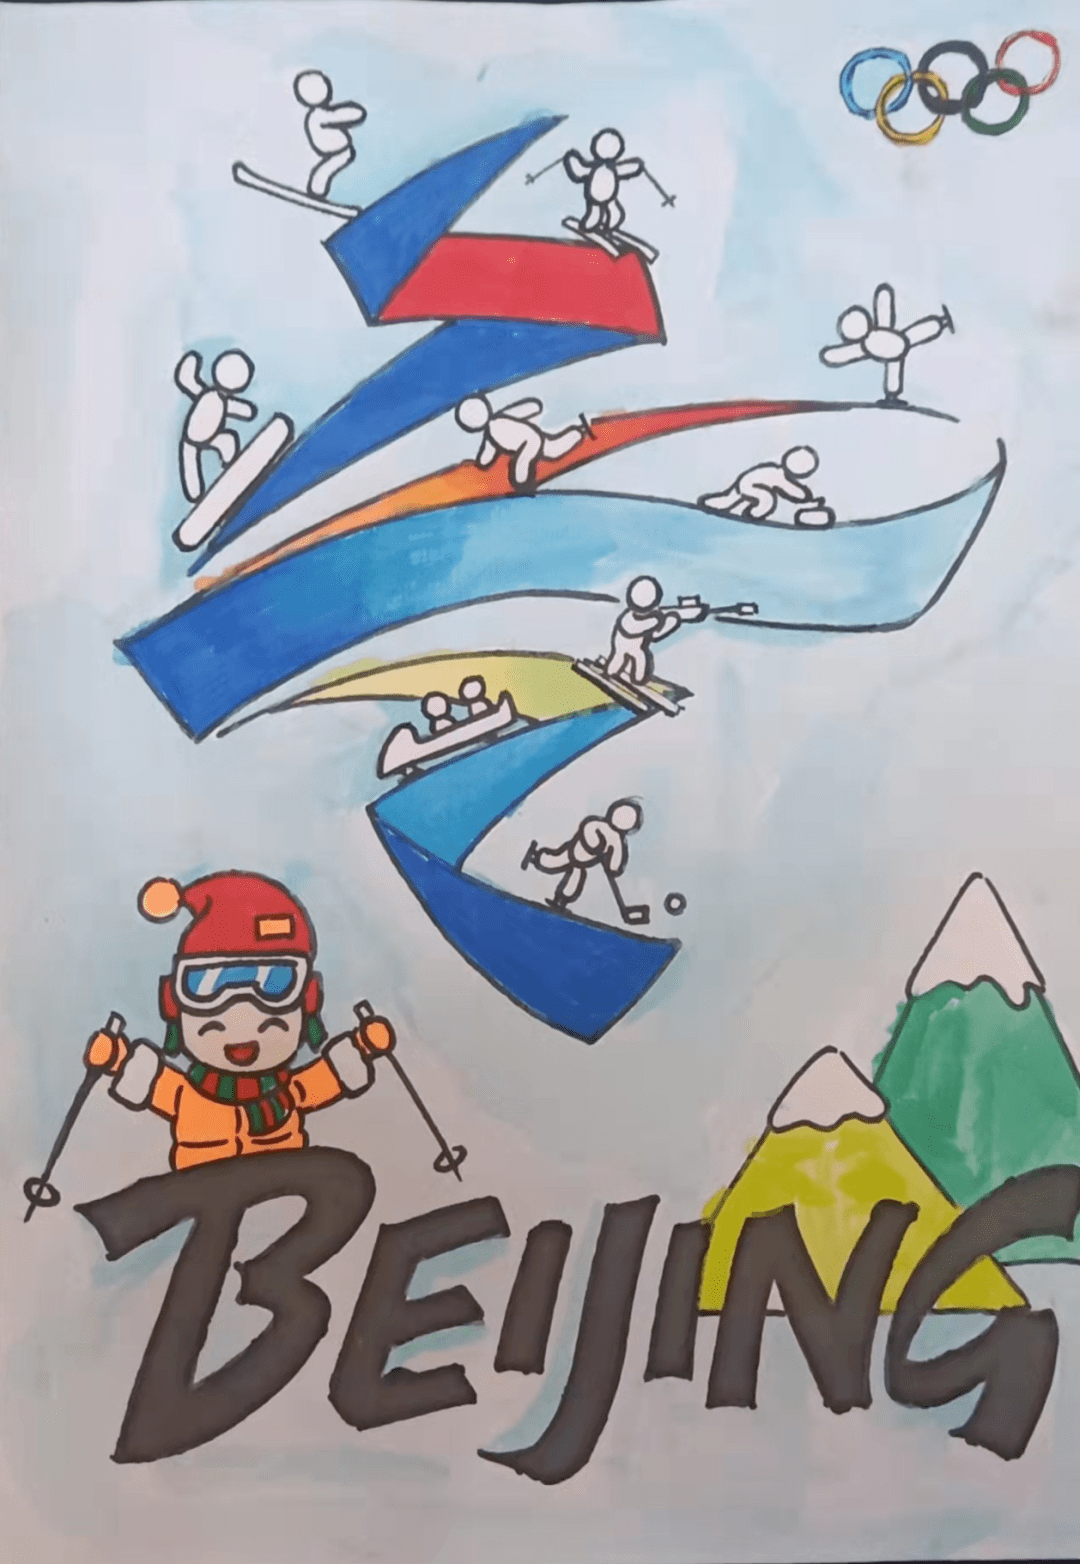 一起向未来】定兴县妇联助力河北省第三届冰雪运动会儿童绘画作品展播